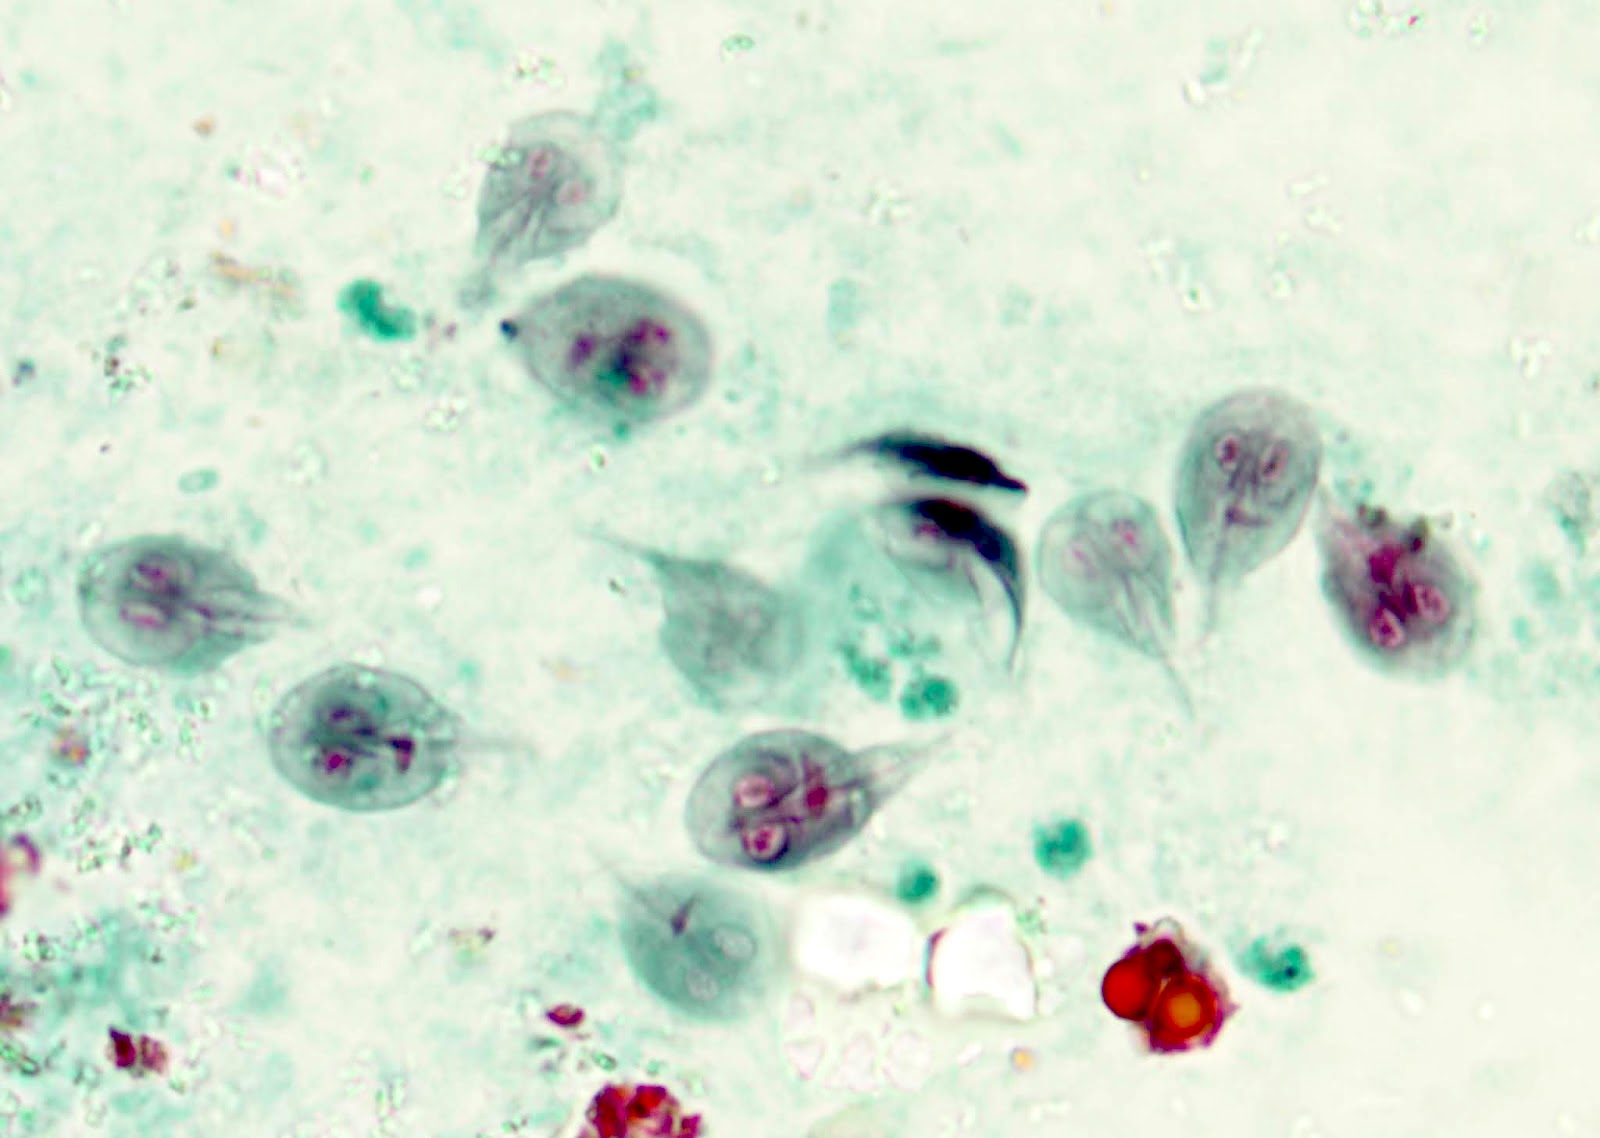 Cryptosporidiosis and giradiasis in Pawi, northwest Ethiopia - Giardia microscopy